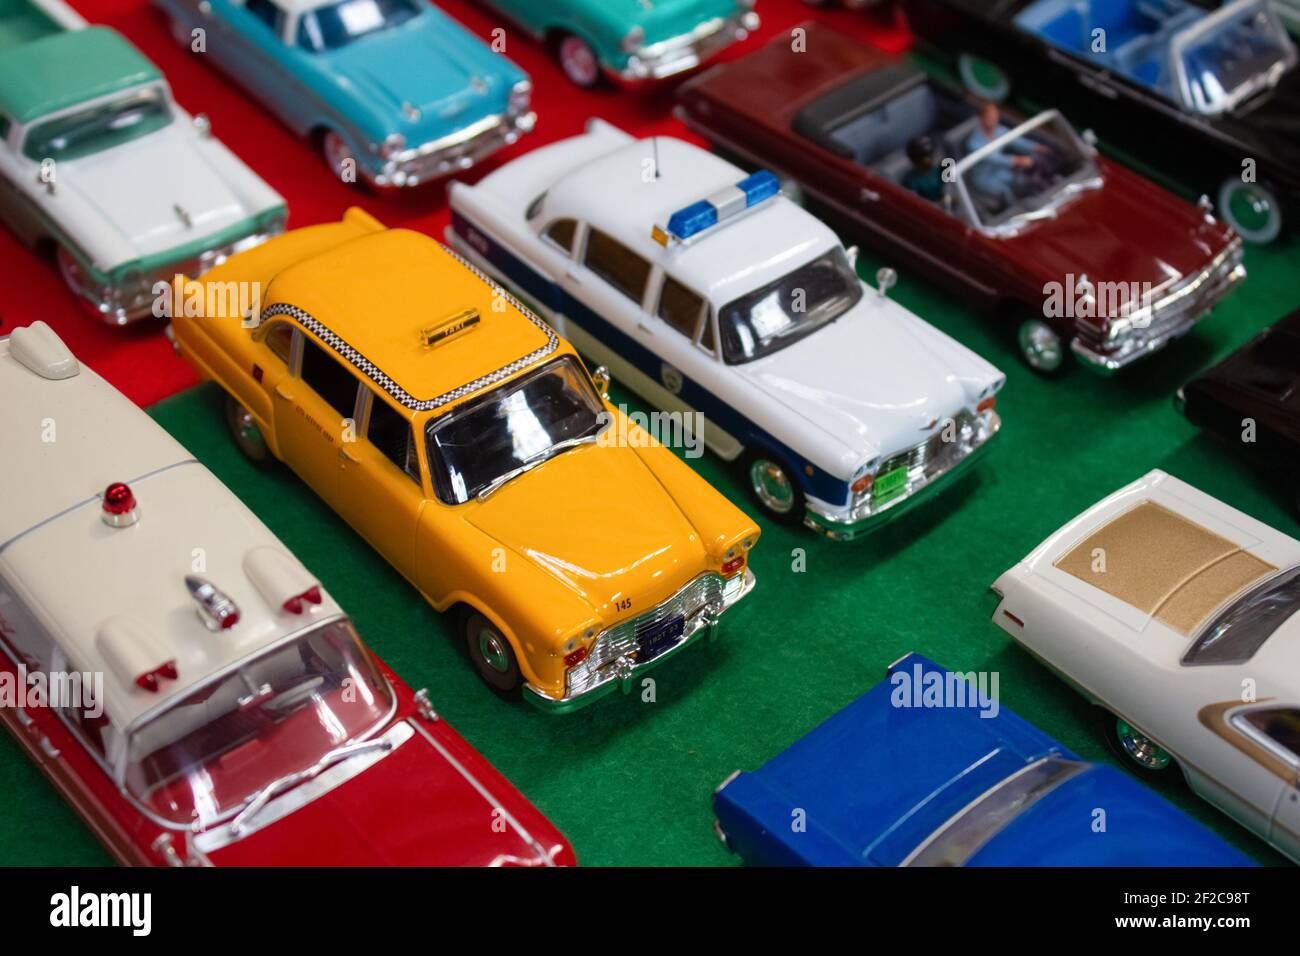 Lviv, Ucraina - 7 marzo 2021 - gruppo di auto giocattolo modello retro - diverse auto d'epoca da collezione su sfondo verde. Messa a fuoco selettiva Foto Stock